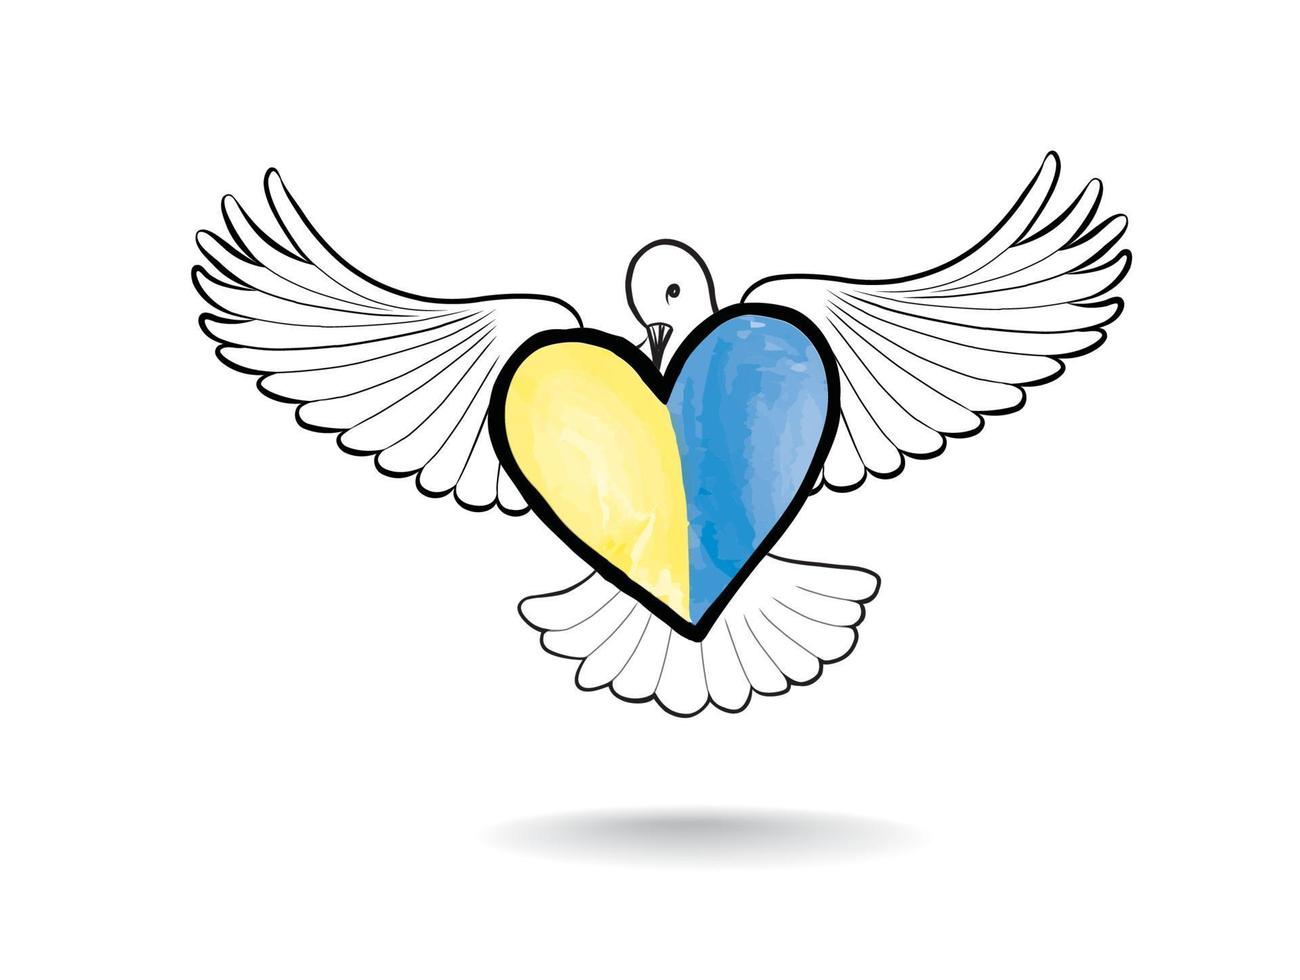 bandiera dell'ucraina con simboli di colomba della pace. stai in pace. bandiera dell'ucraina a forma di colomba della pace. il concetto di nessuna guerra, pace in ucraina. vettore